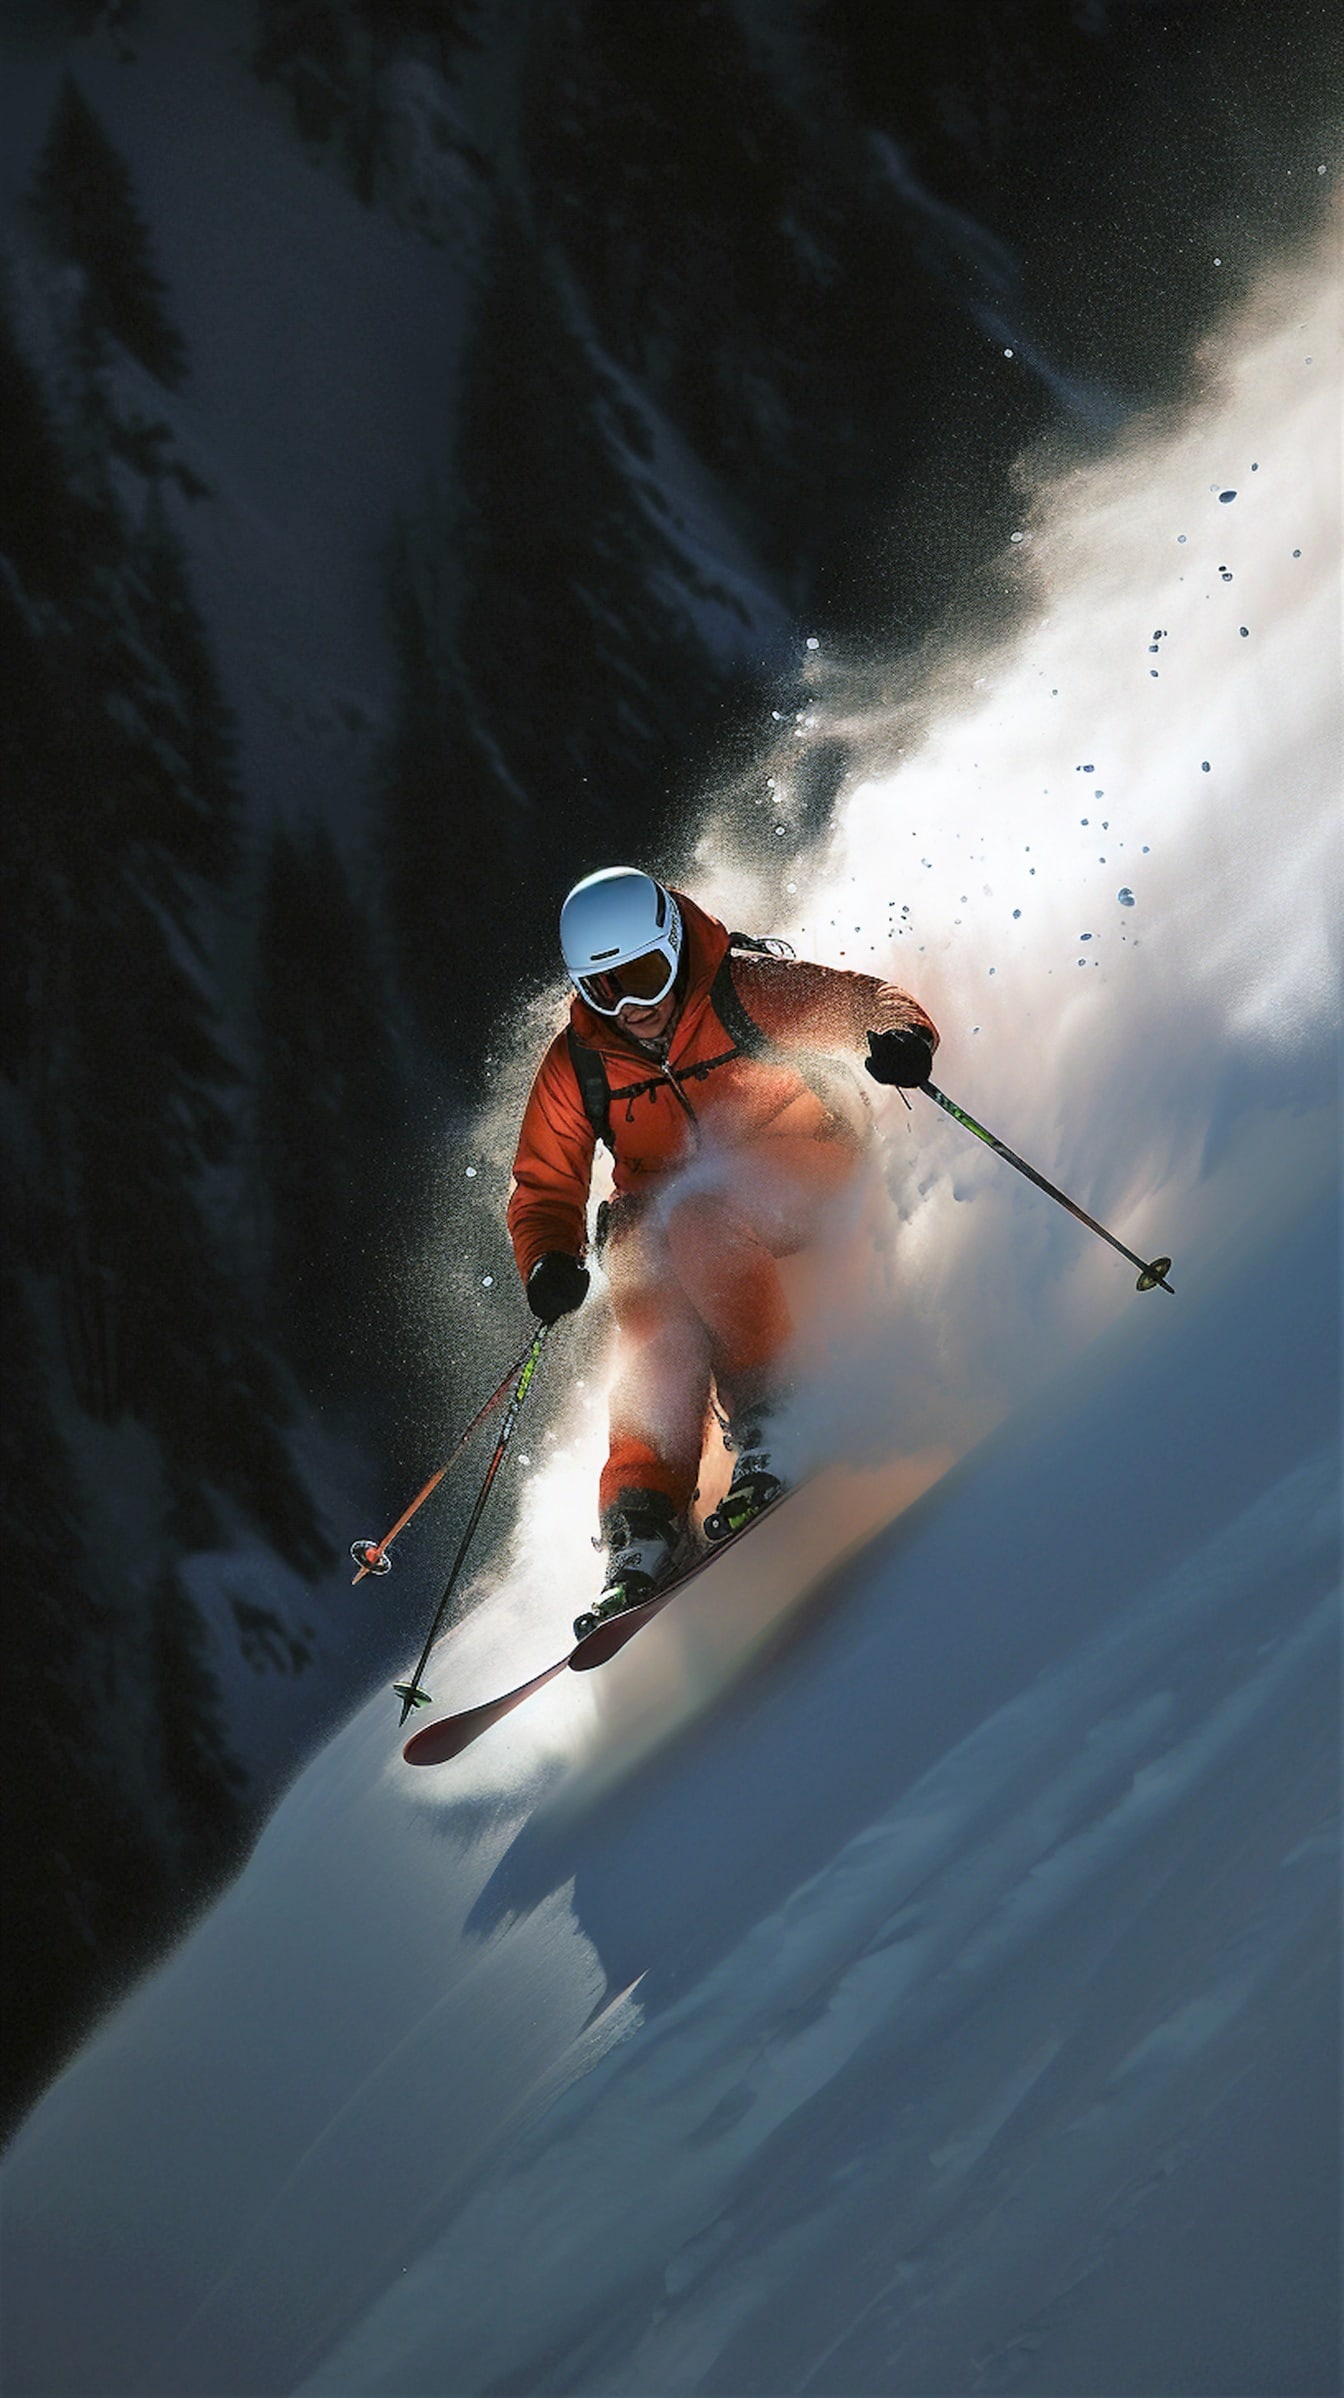 오렌지 옐로우 재킷을 입은 익스트림 스키어가 산에서 스키를 타고 있습니다.